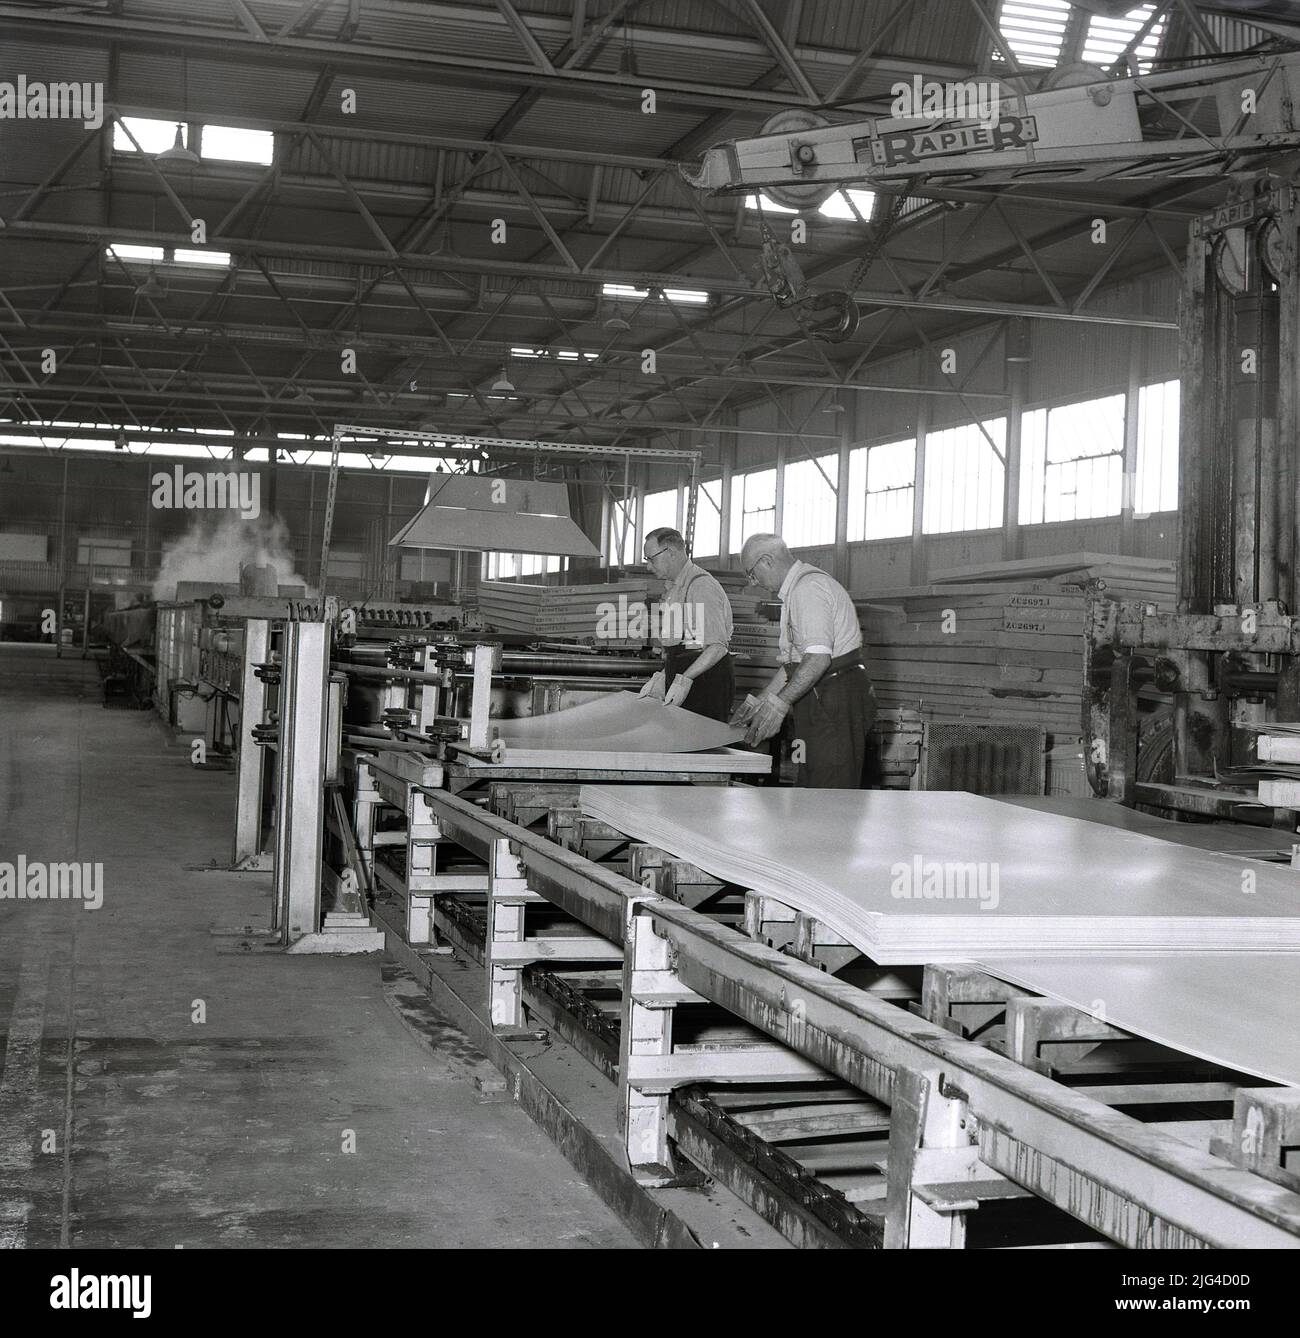 1950s, historique, deux sidérurgistes manipulant des tôles d'acier finies à l'aciérie Steel Company of Wales Abbey à Port Talbot, pays de Galles. ROYAUME-UNI. L'acier pressé et l'acier en fer blanc pour usage domestique et la fabrication de voitures automobiles étaient tous deux des produits de ces géants industriels. Banque D'Images